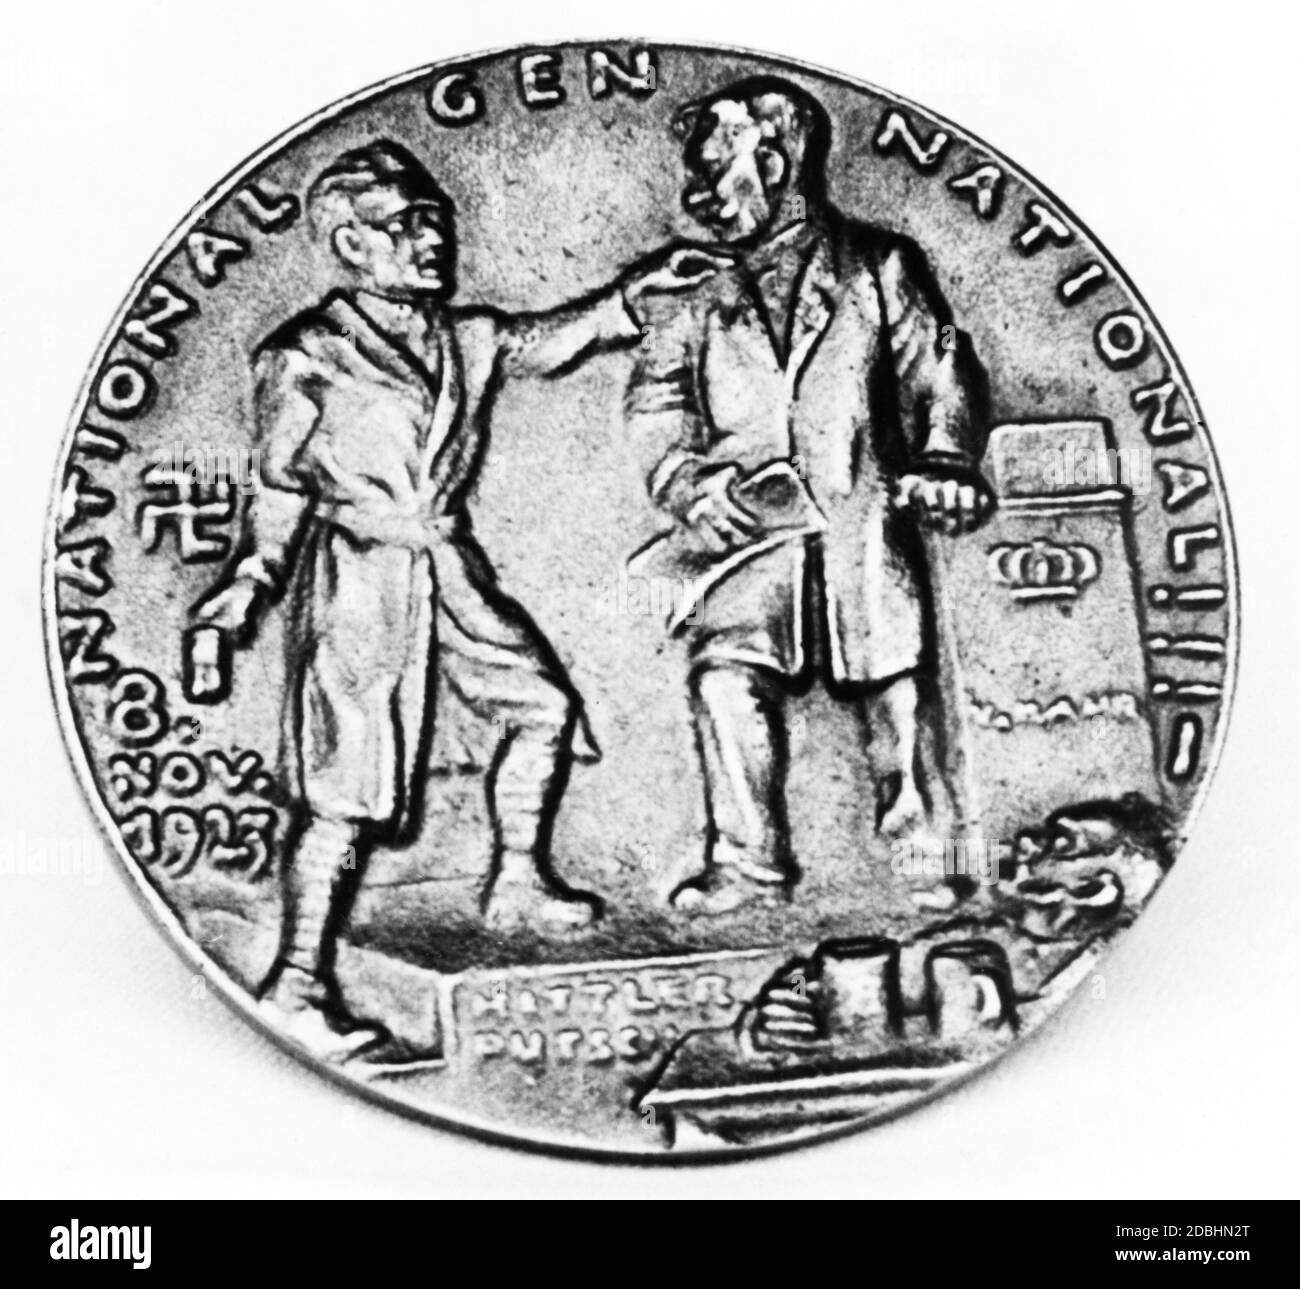 Der Münzhändler Karl Kress zerstörte nach der Machtübertritt der NSDAP 1933 alle erreichbaren Münzprägeanstalten dieser Medaille. Der Bierhaussaal Putsch - Hitler mit Kahr im Buergerbraeukeller - als Punch and Judy Show gesehen. Stockfoto